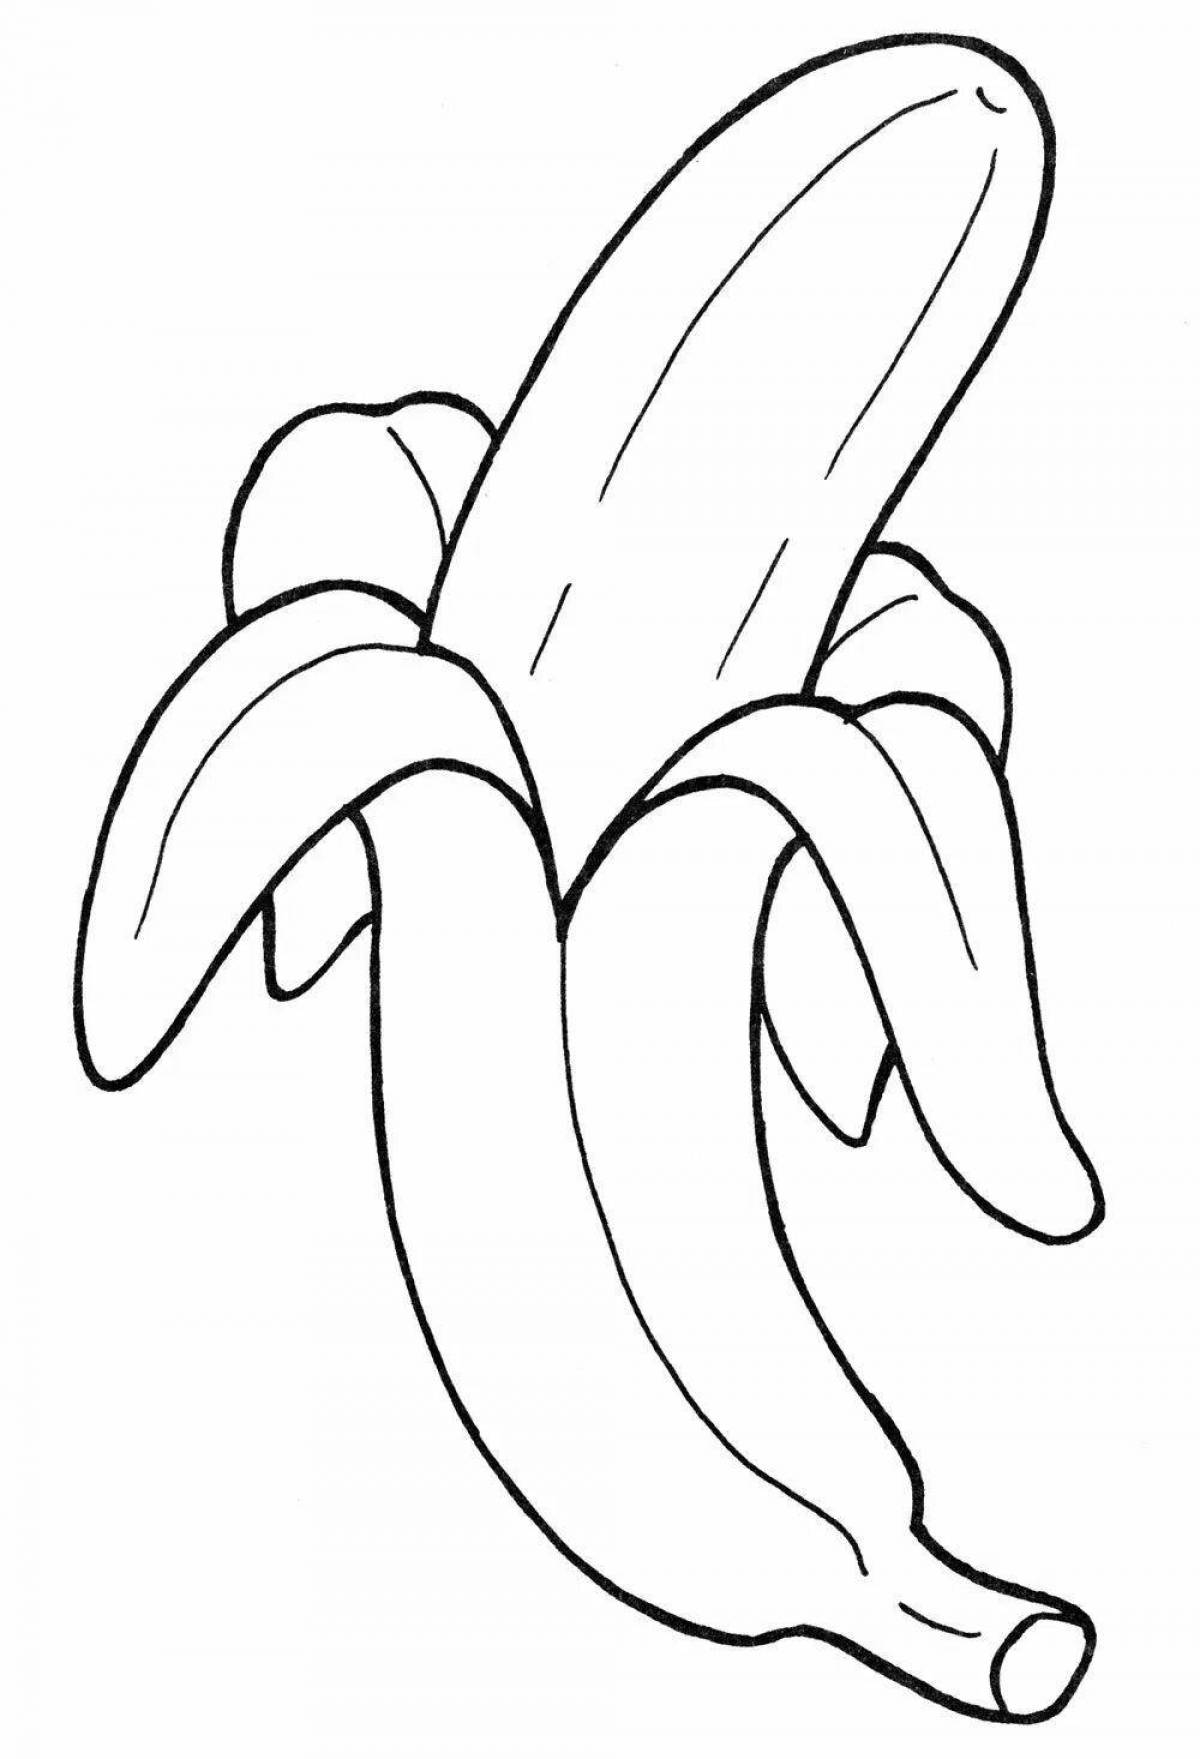 Creative banana drawing